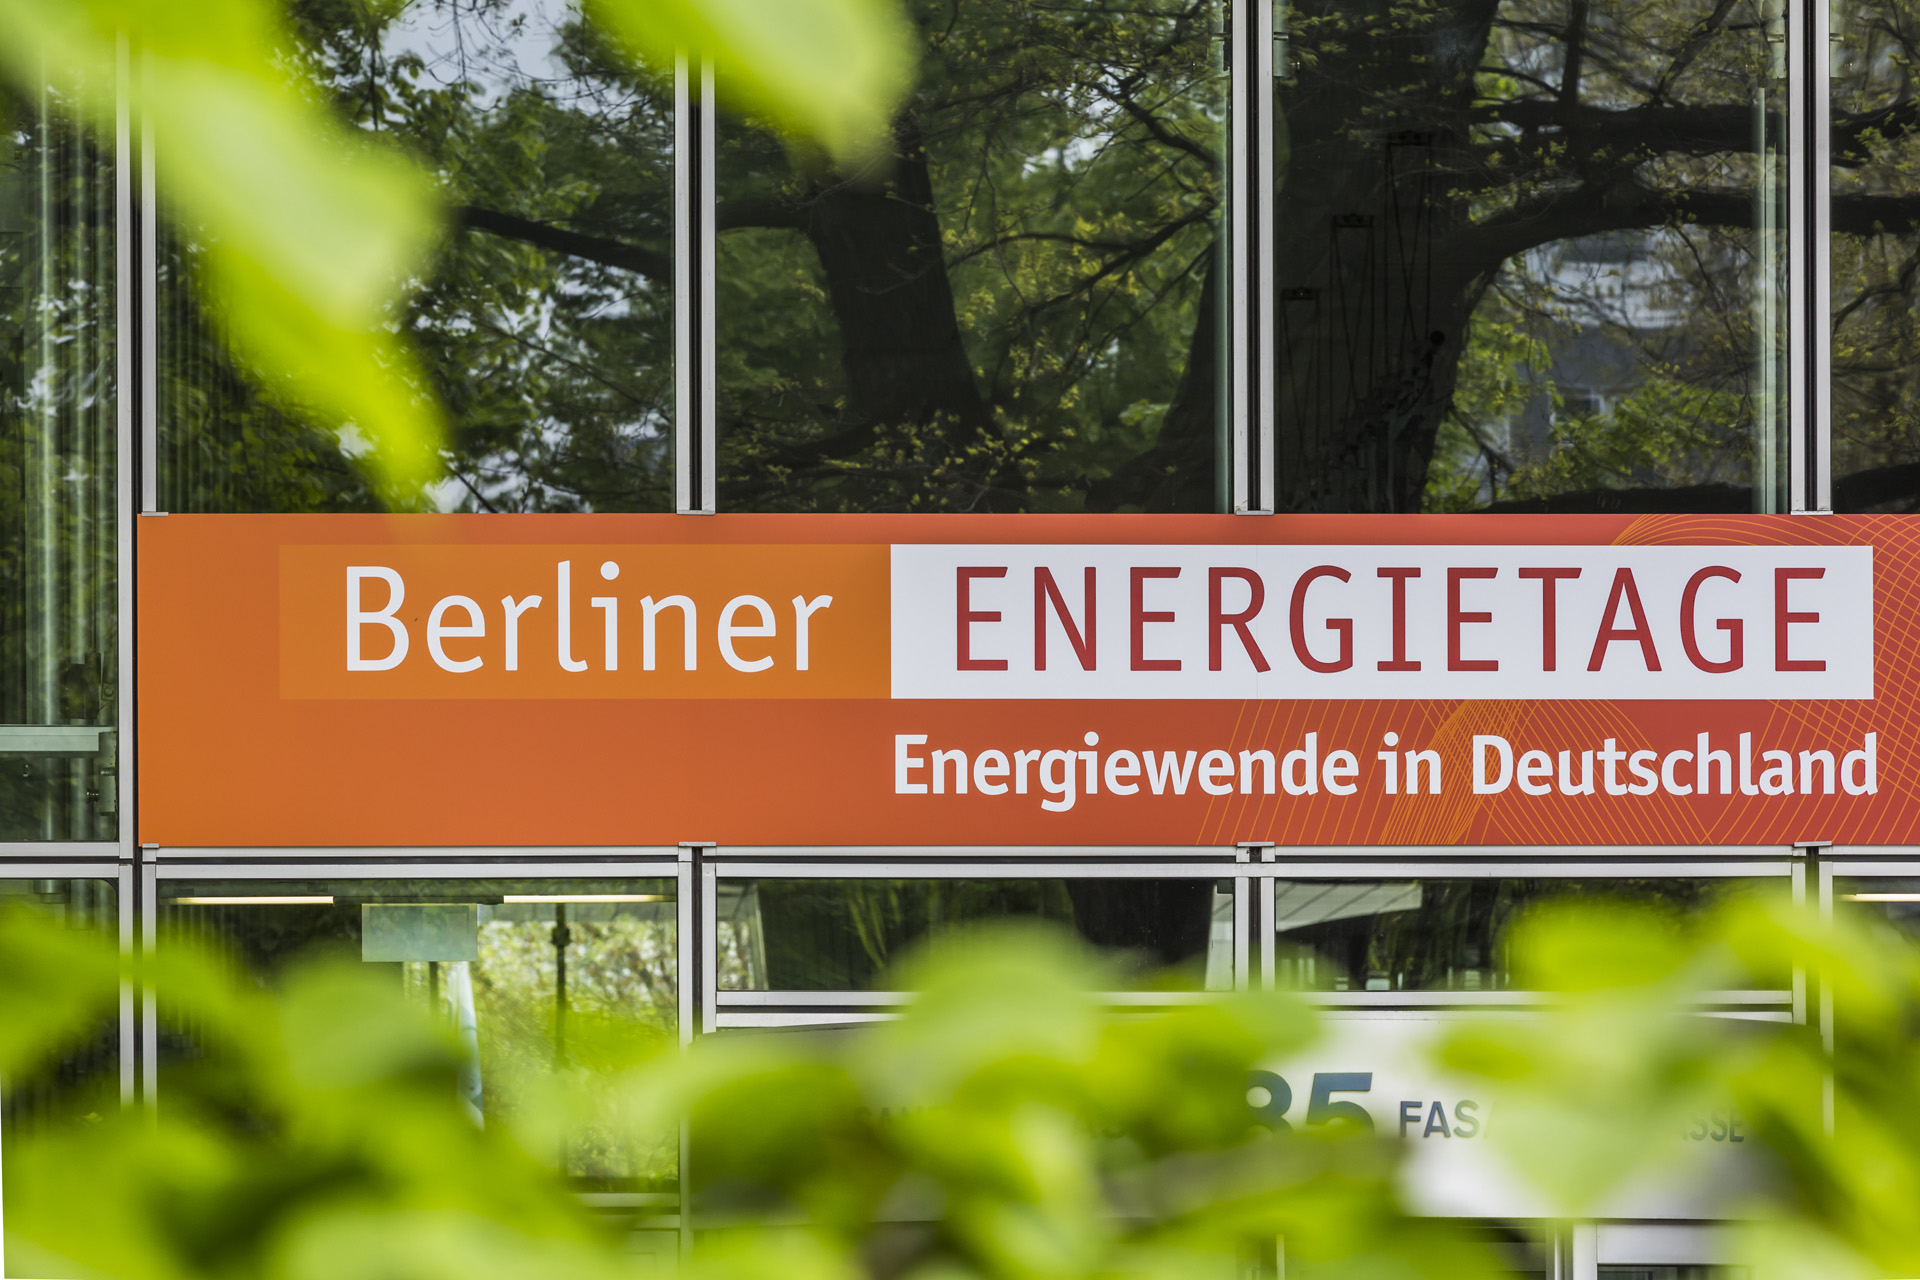 Banner an einem Gebäude mit Aufschrift "Berliner Energietage - Energiewende in Deutschland"